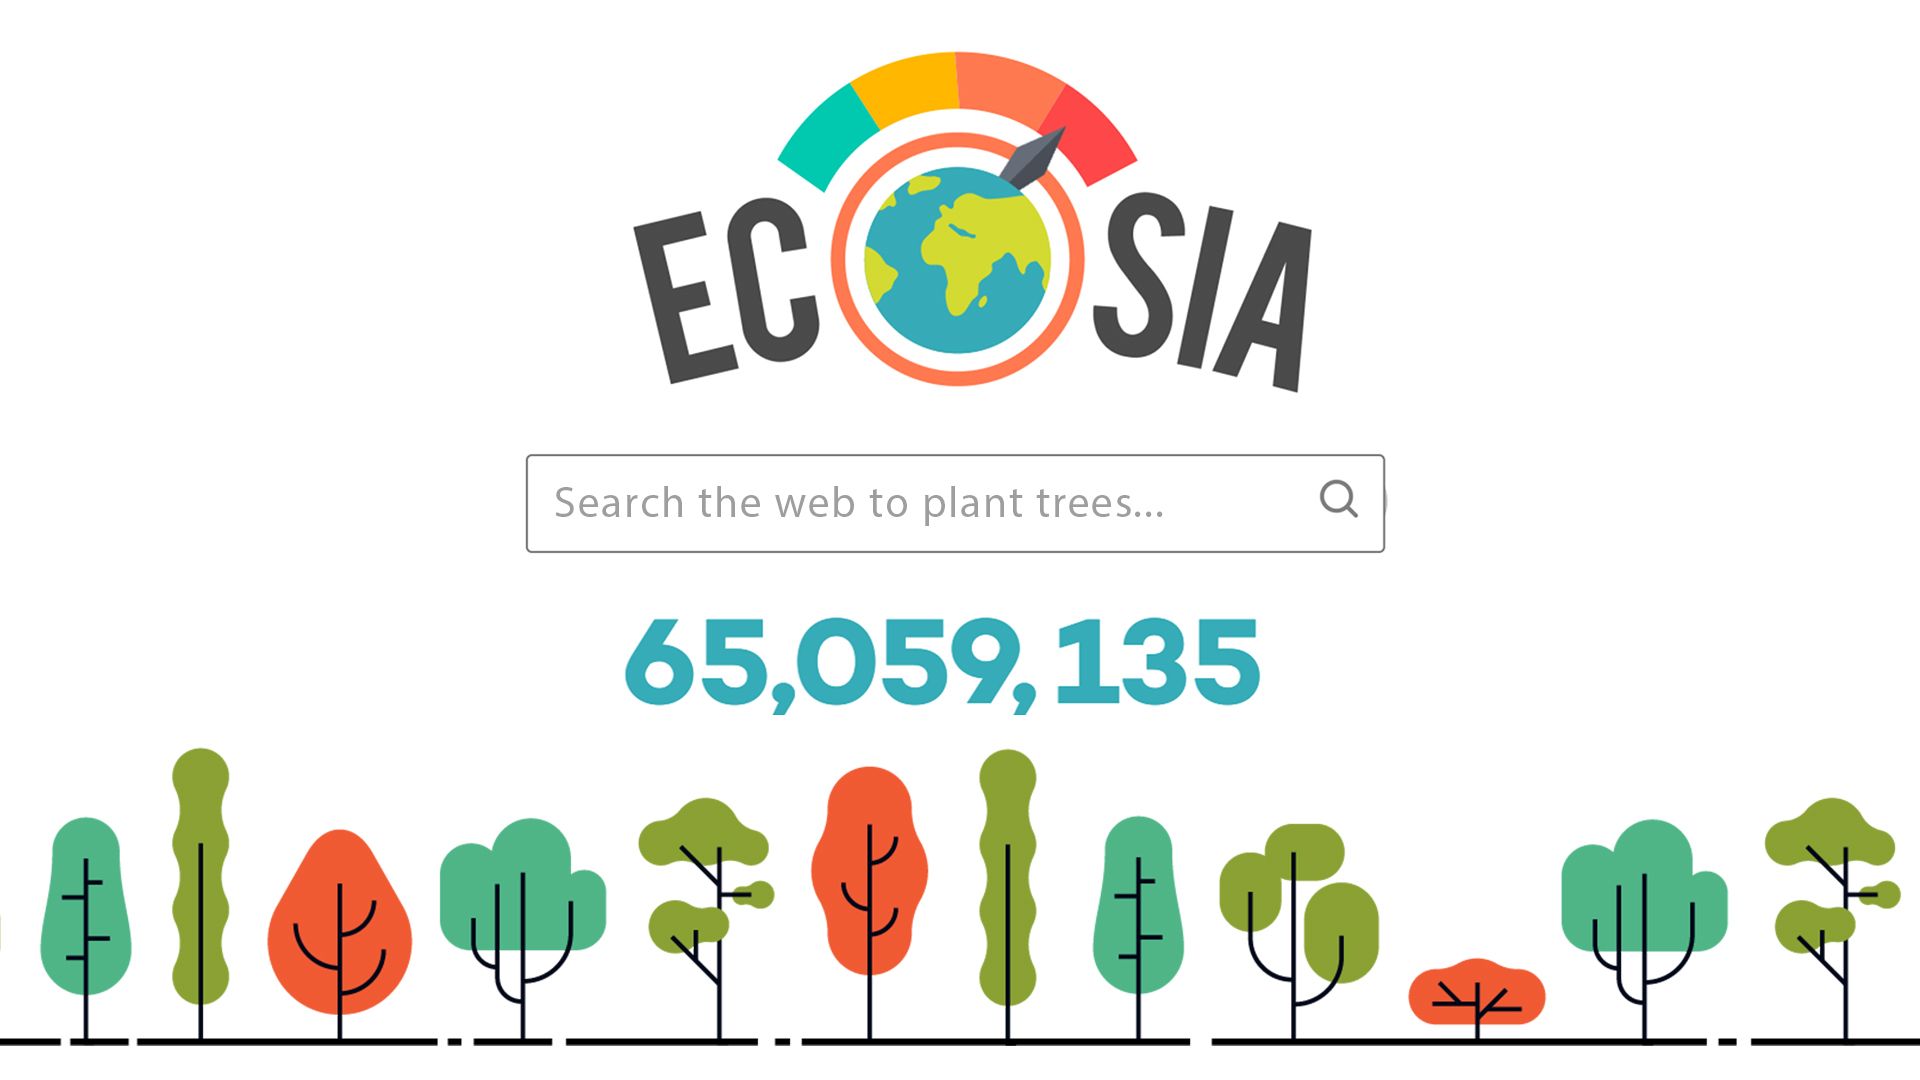 "Den gröna sökmotorn Ecosia lanserar sin egen webbläsare